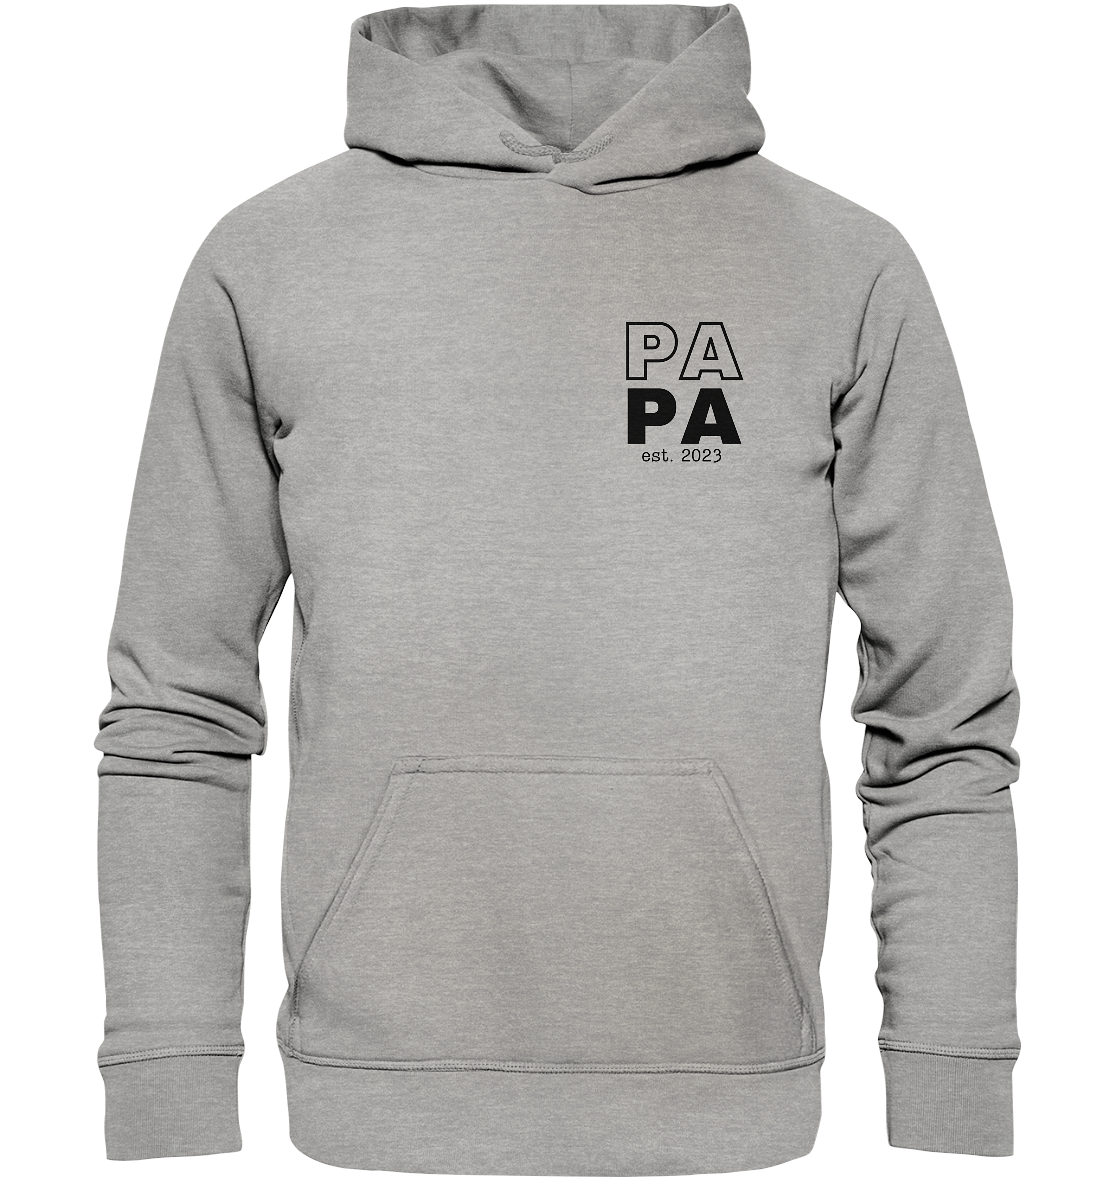 Ein Papa Hoodie mit minimalistischem Design von ShirtDesire. Personalisierter Druck, hochwertige Materialien. Perfekt für stolze Väter, die ihren eigenen Stil ausdrücken möchten.